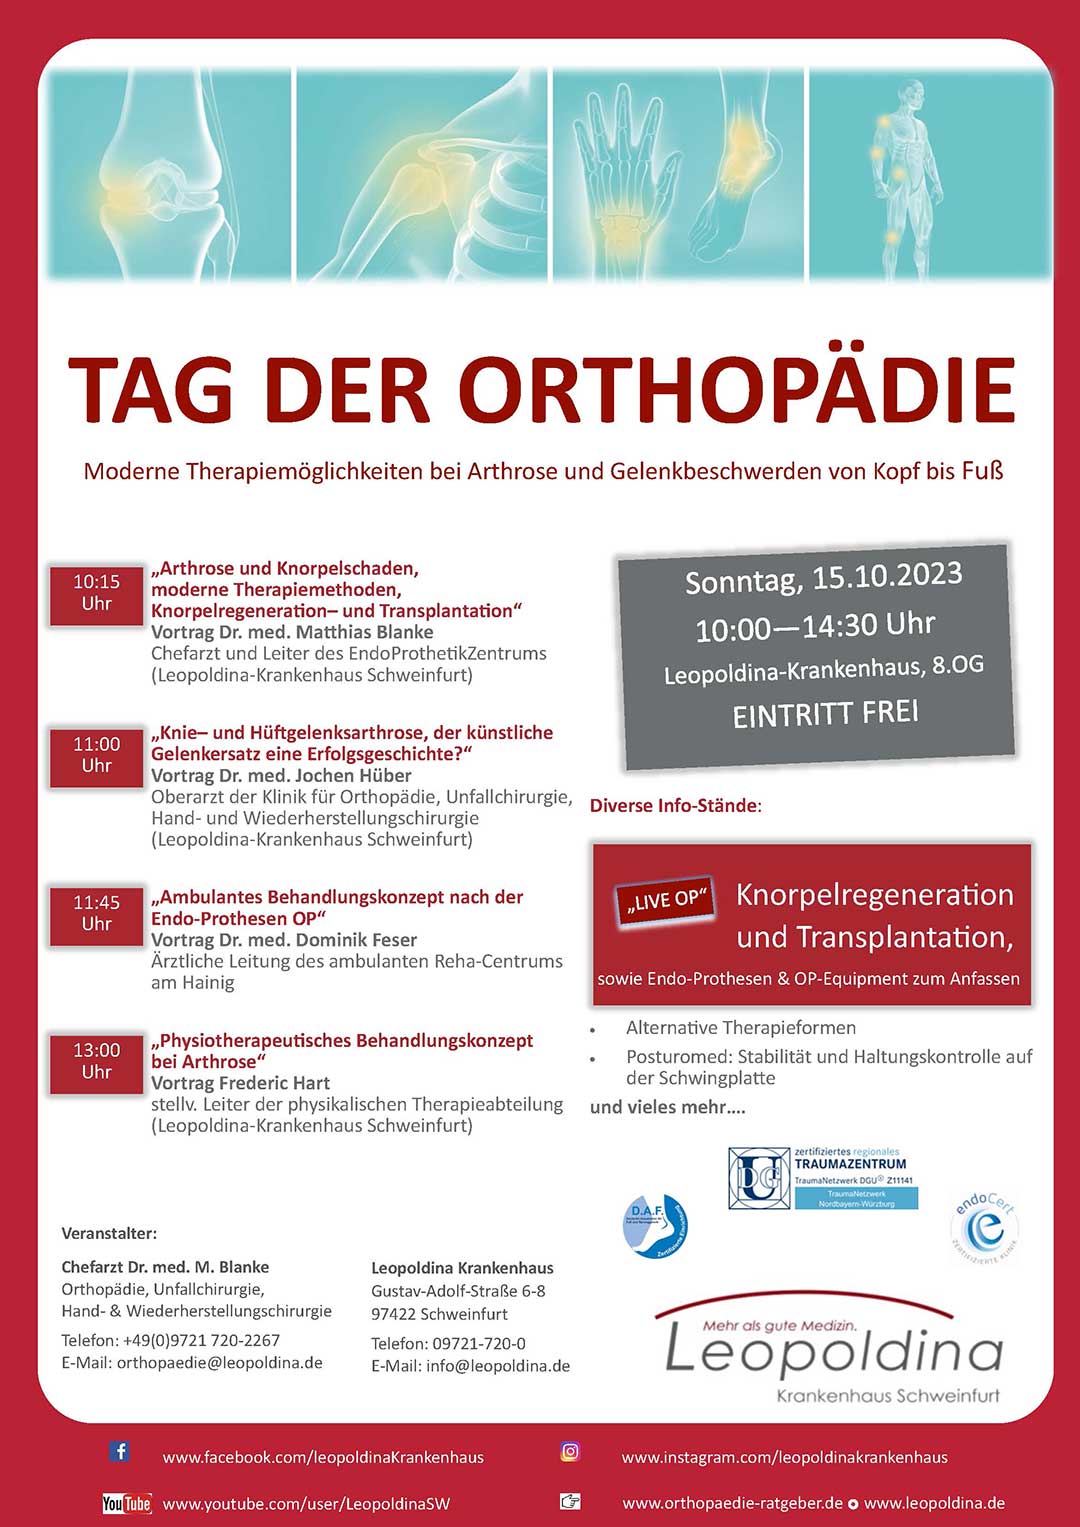 meidrix biomediacals News: Tag der Orthopädie Flyer - Informationen zum Event